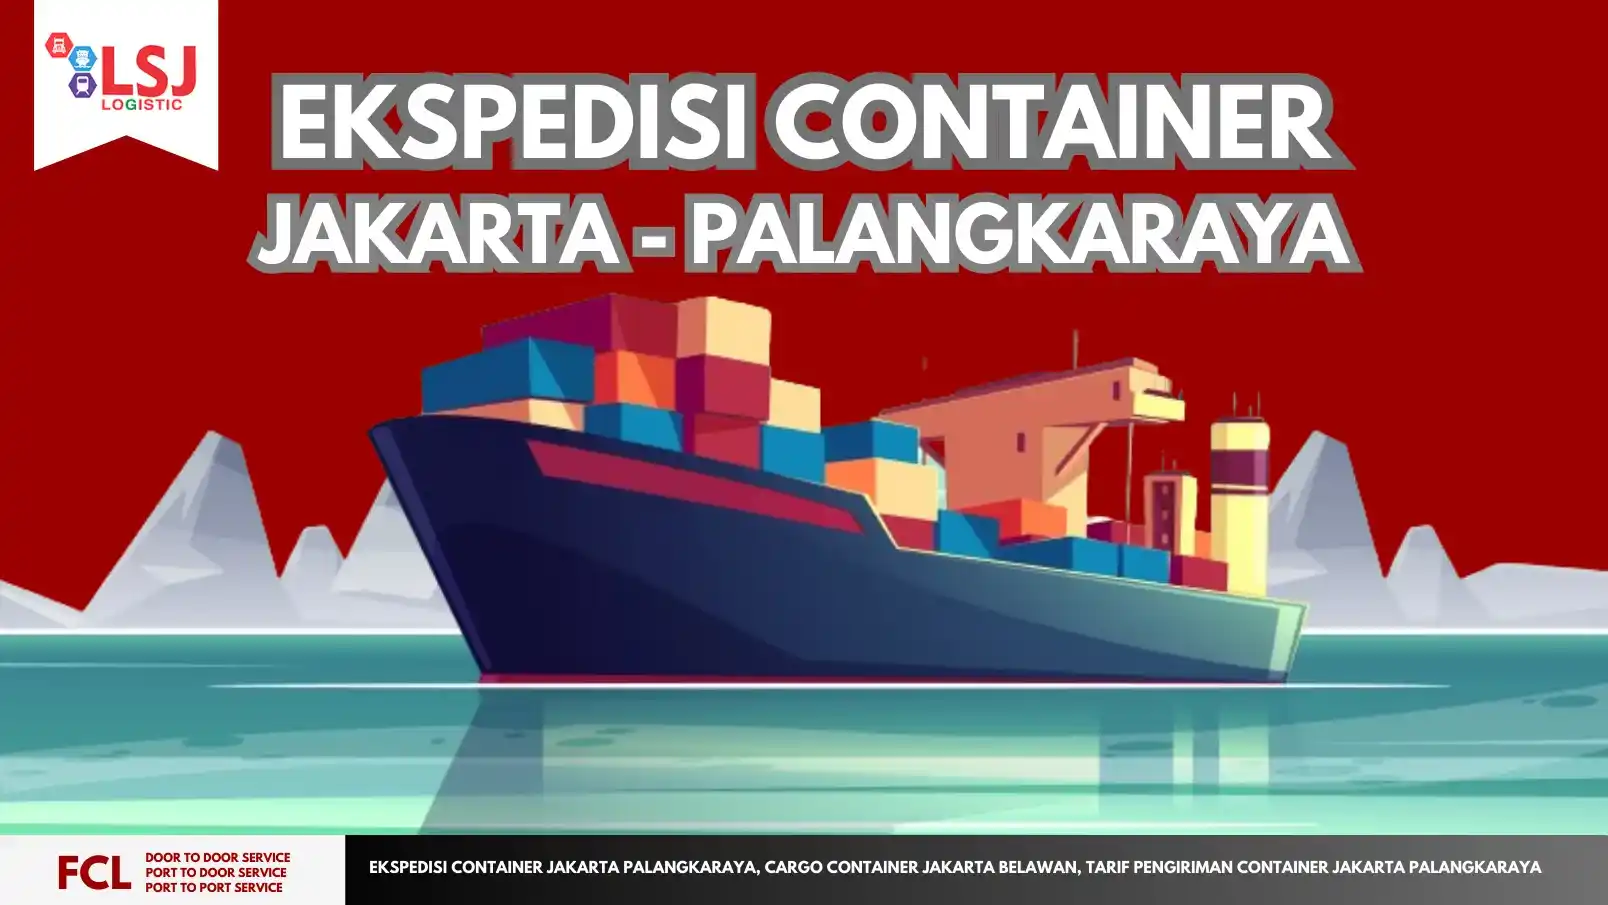 Ongkos Kirim Container Jakarta Palangkaraya